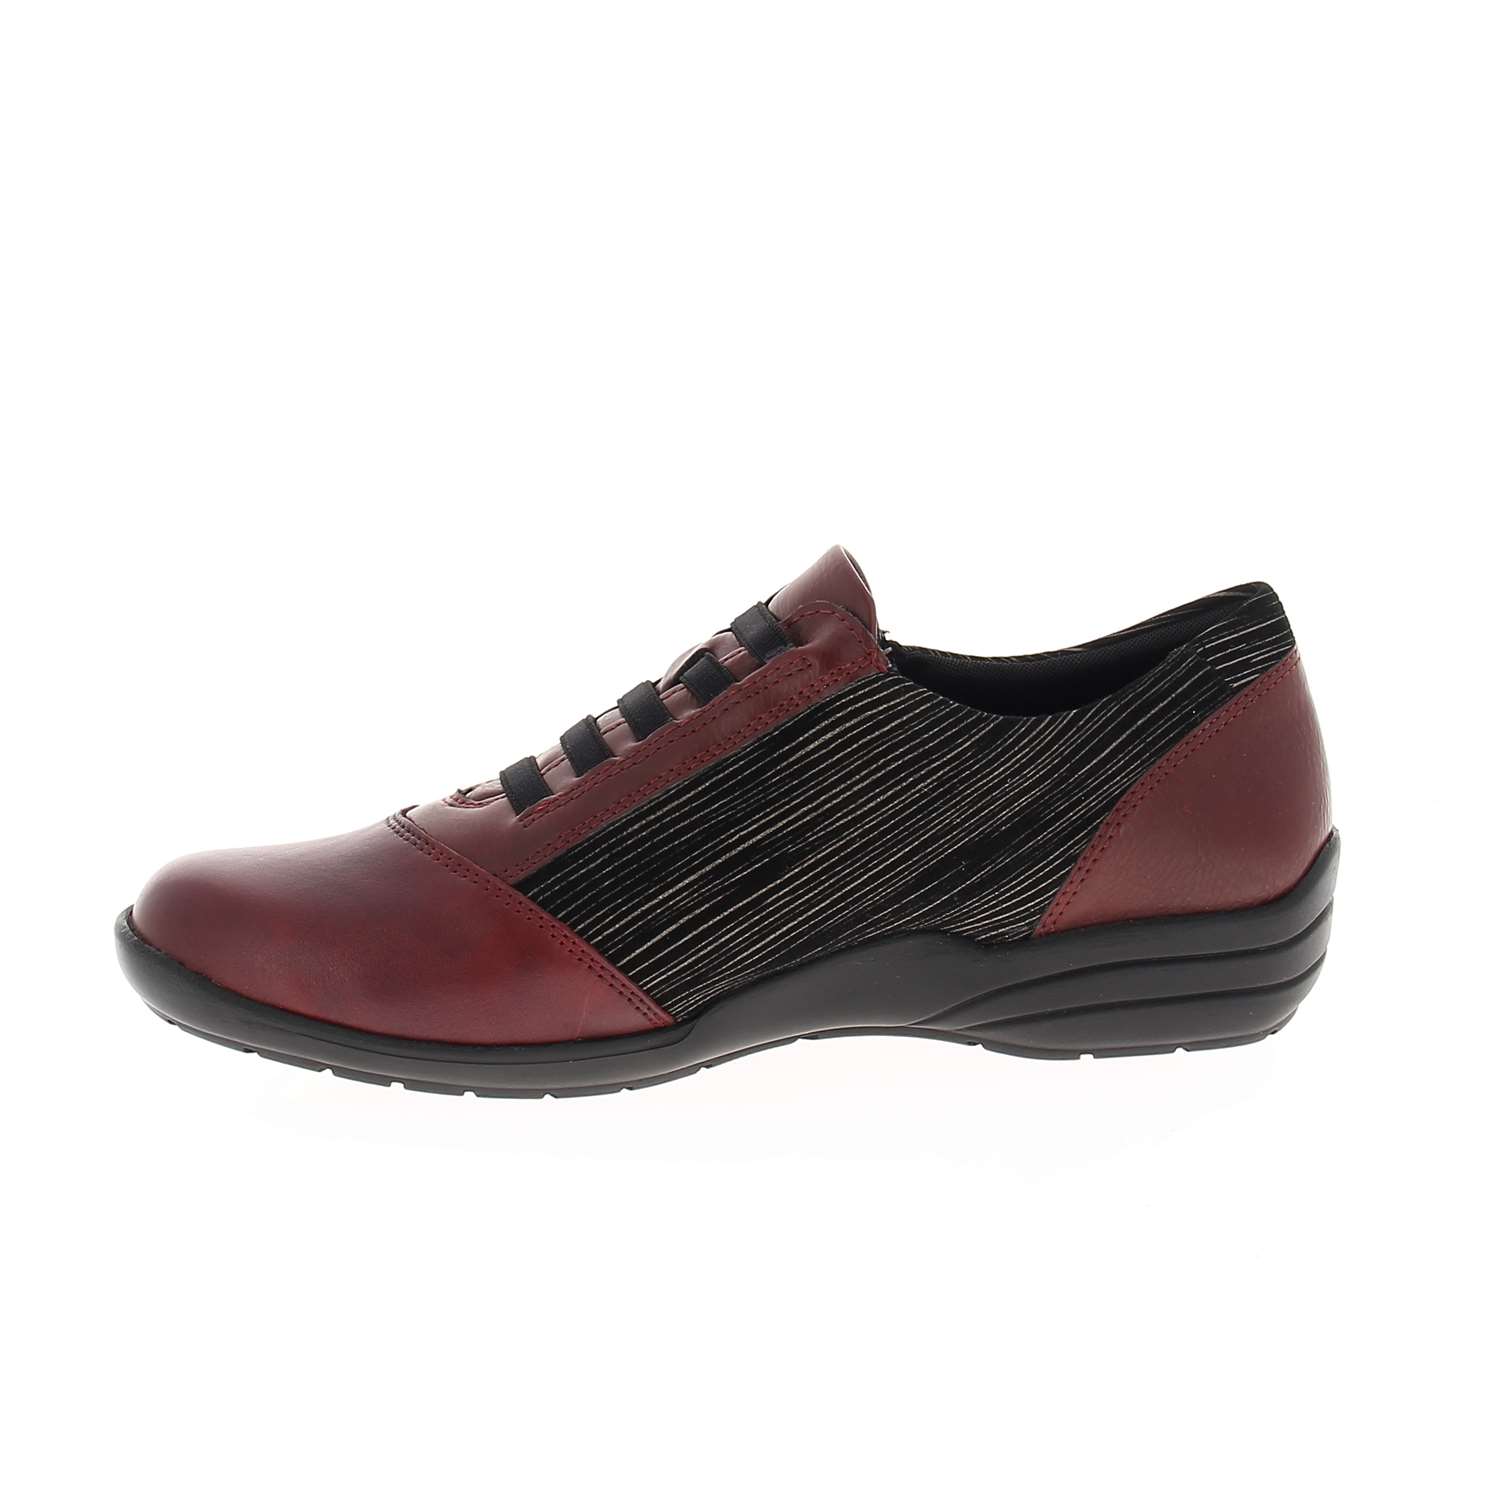 05 - REMONU - REMONTE - Chaussures à lacets - Cuir